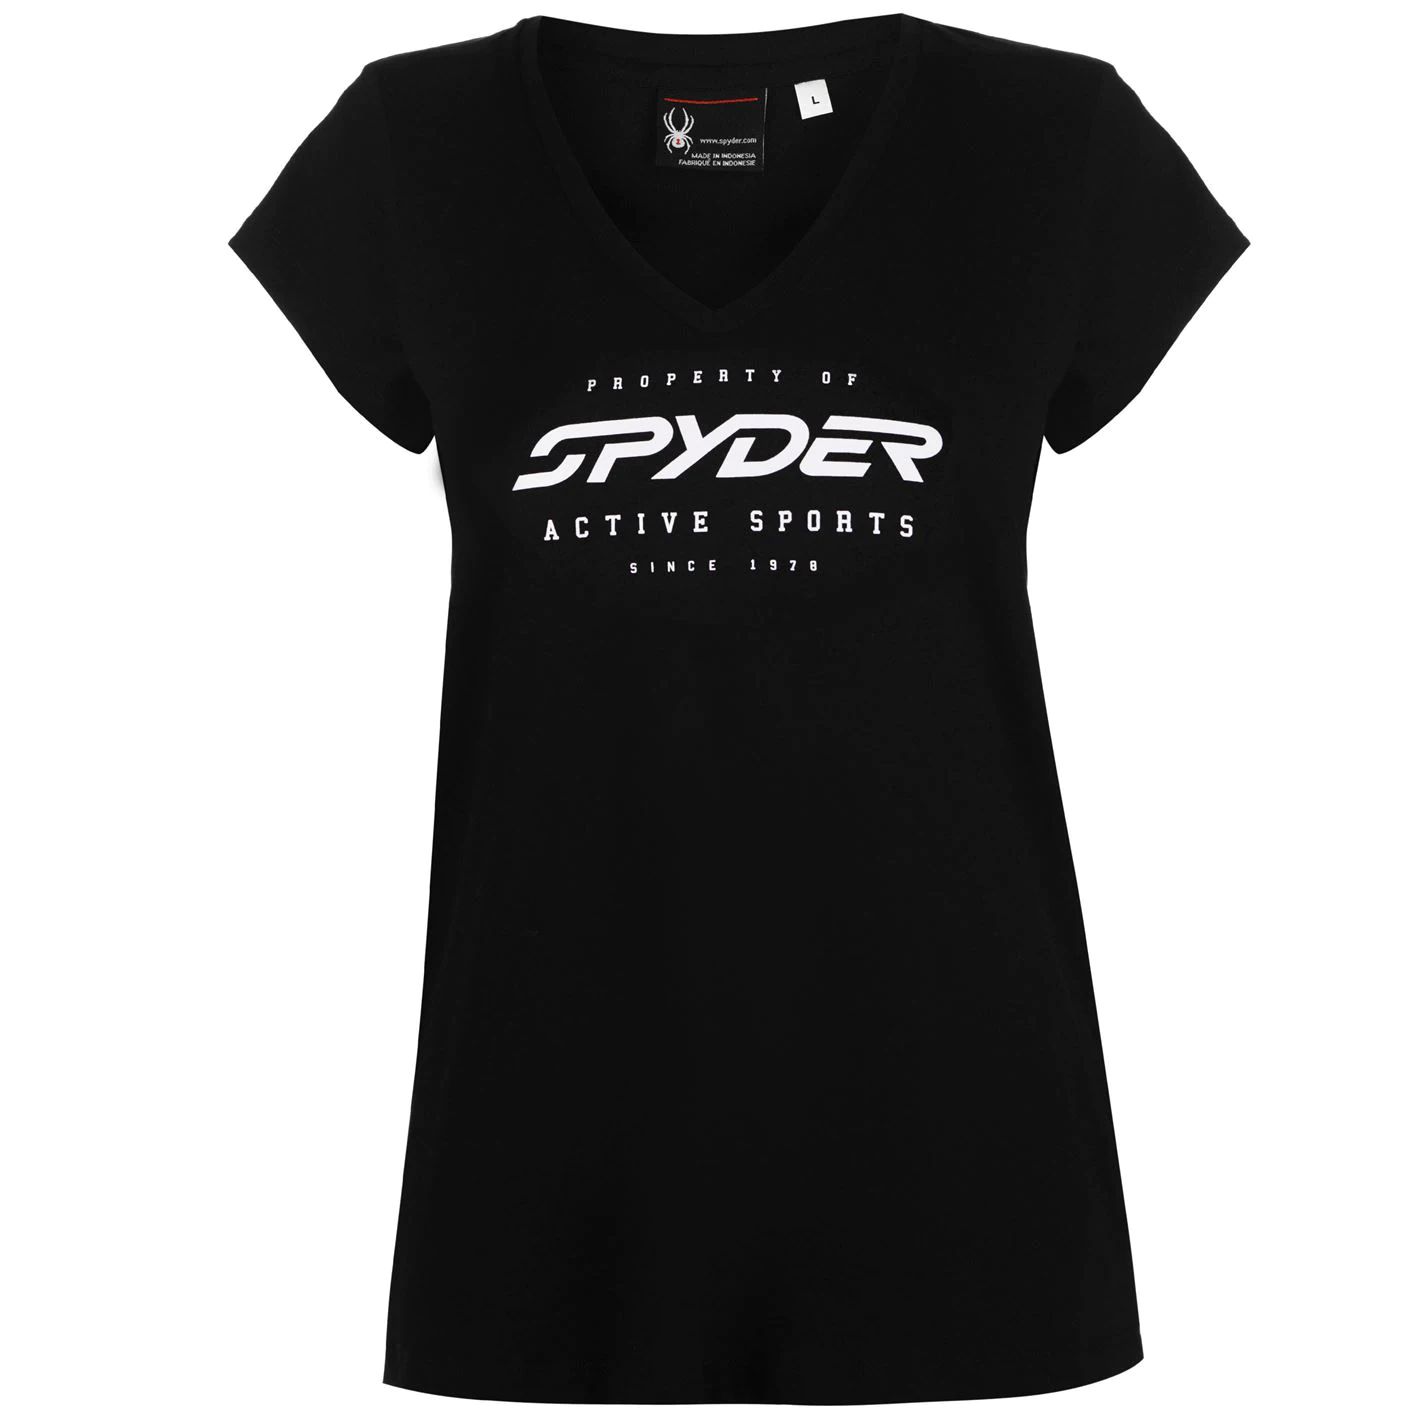 dámské tričko SPYDER - BLACK - M